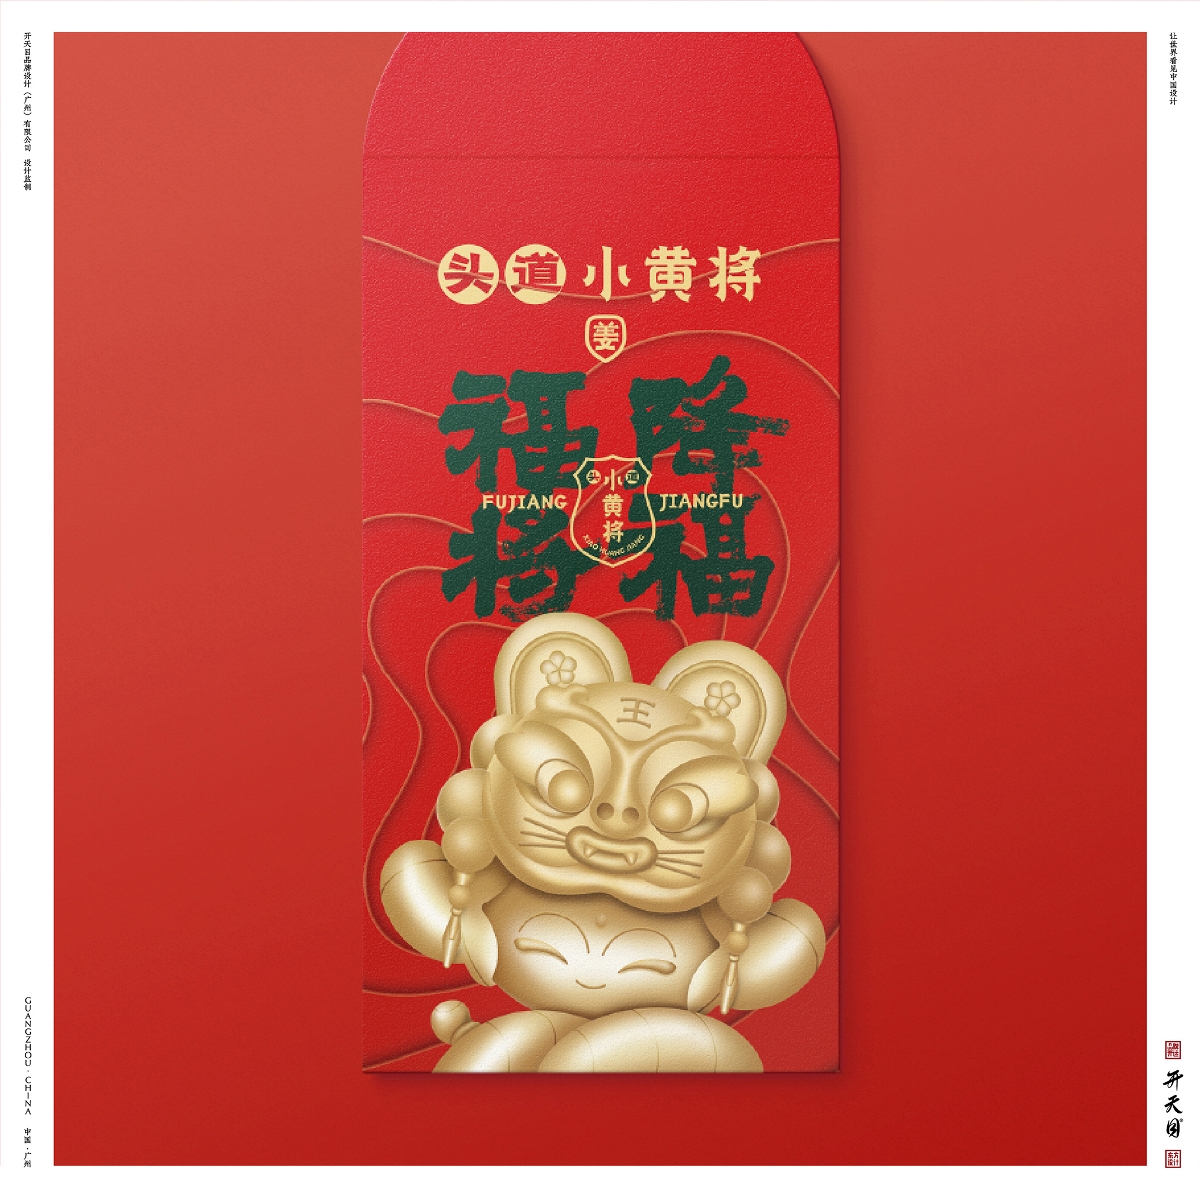 中国风国潮品牌洗护高端LOGO VI IP 详情 视频 展台 